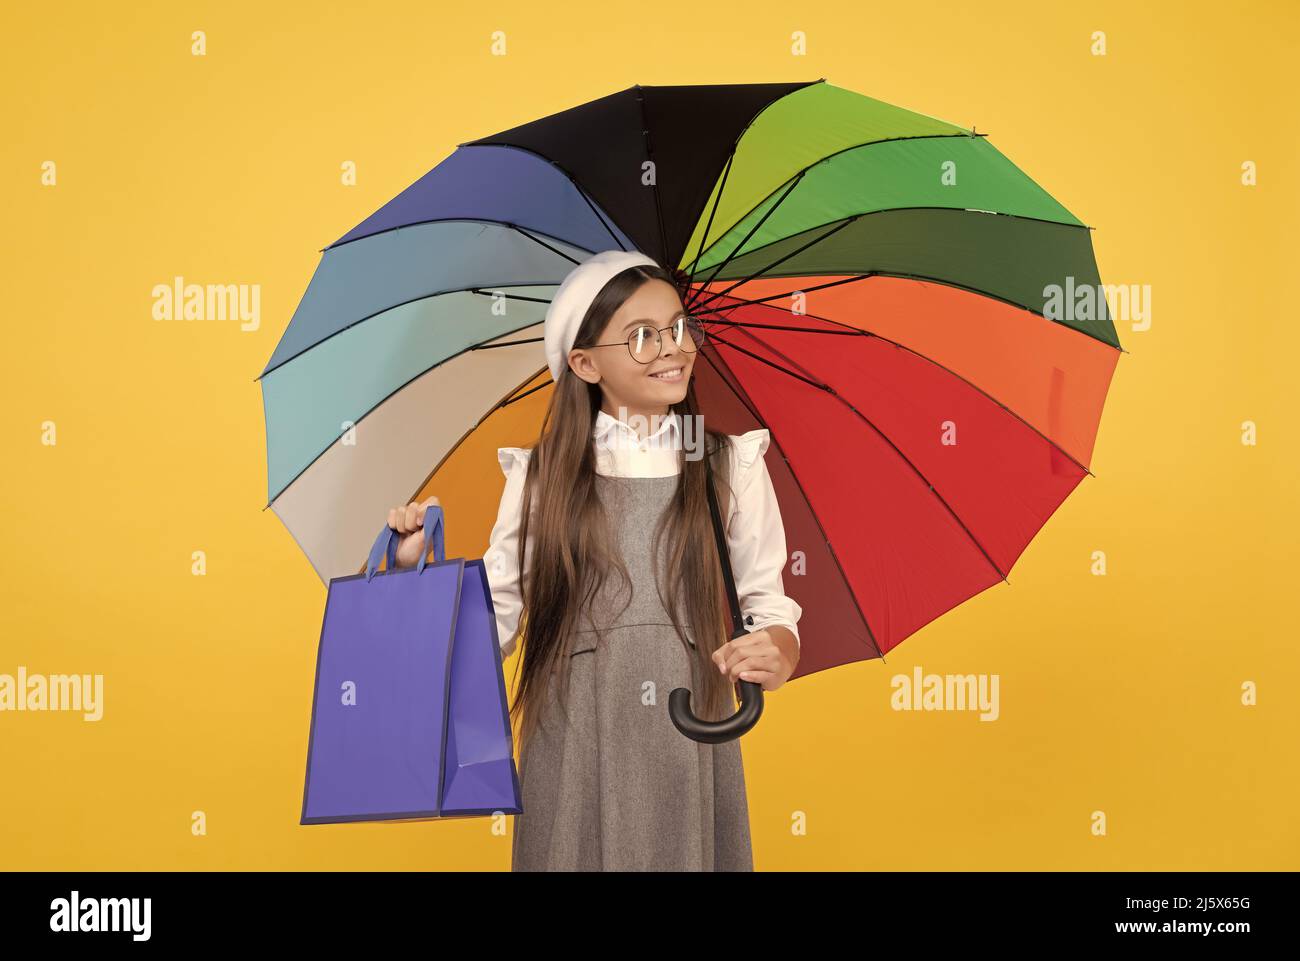 solde de saison. enfant de l'adolescence sous parasol coloré. béret d'enfant avec parapluie arc-en-ciel. saison d'automne. Banque D'Images